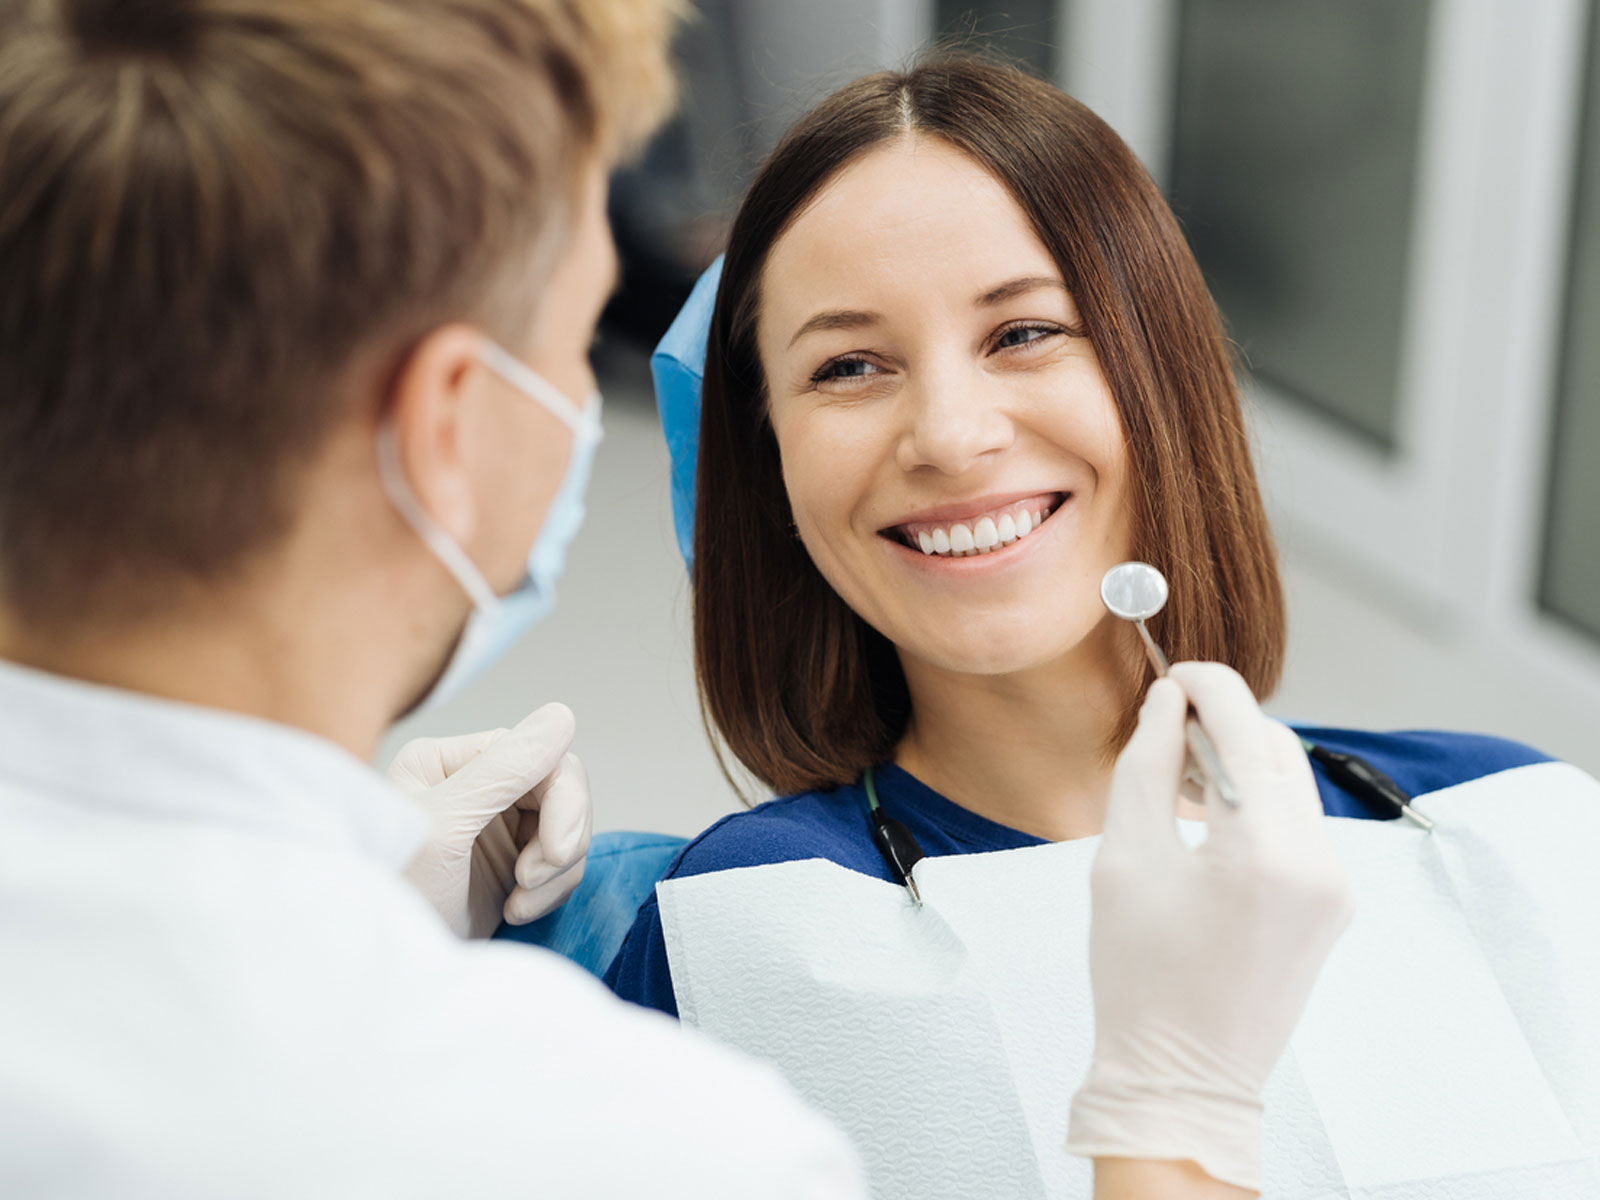 infoblog dresscloud Warszawa: co ile warto robić przegląd jamy ustnej u stomatologa?